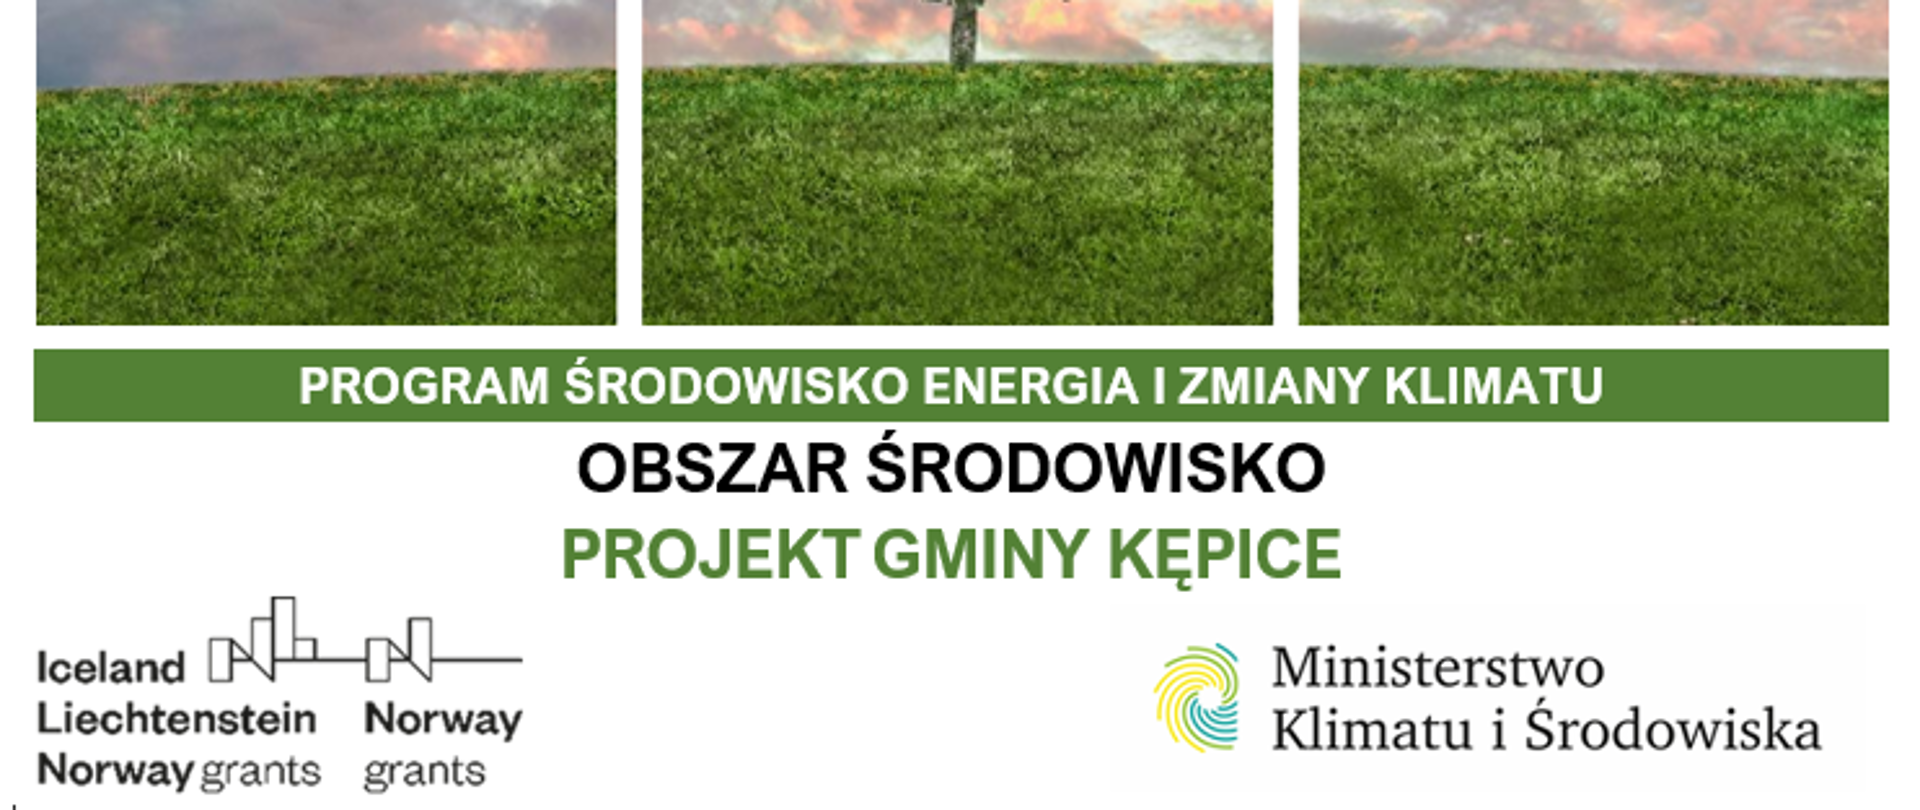 Projekt Ochrona rodzimej przyrody przed inwazją barszczu Sosnowskiego, rdestowca ostrokończystego oraz nawłoci kanadyjskiej KĘPICE MF EOG